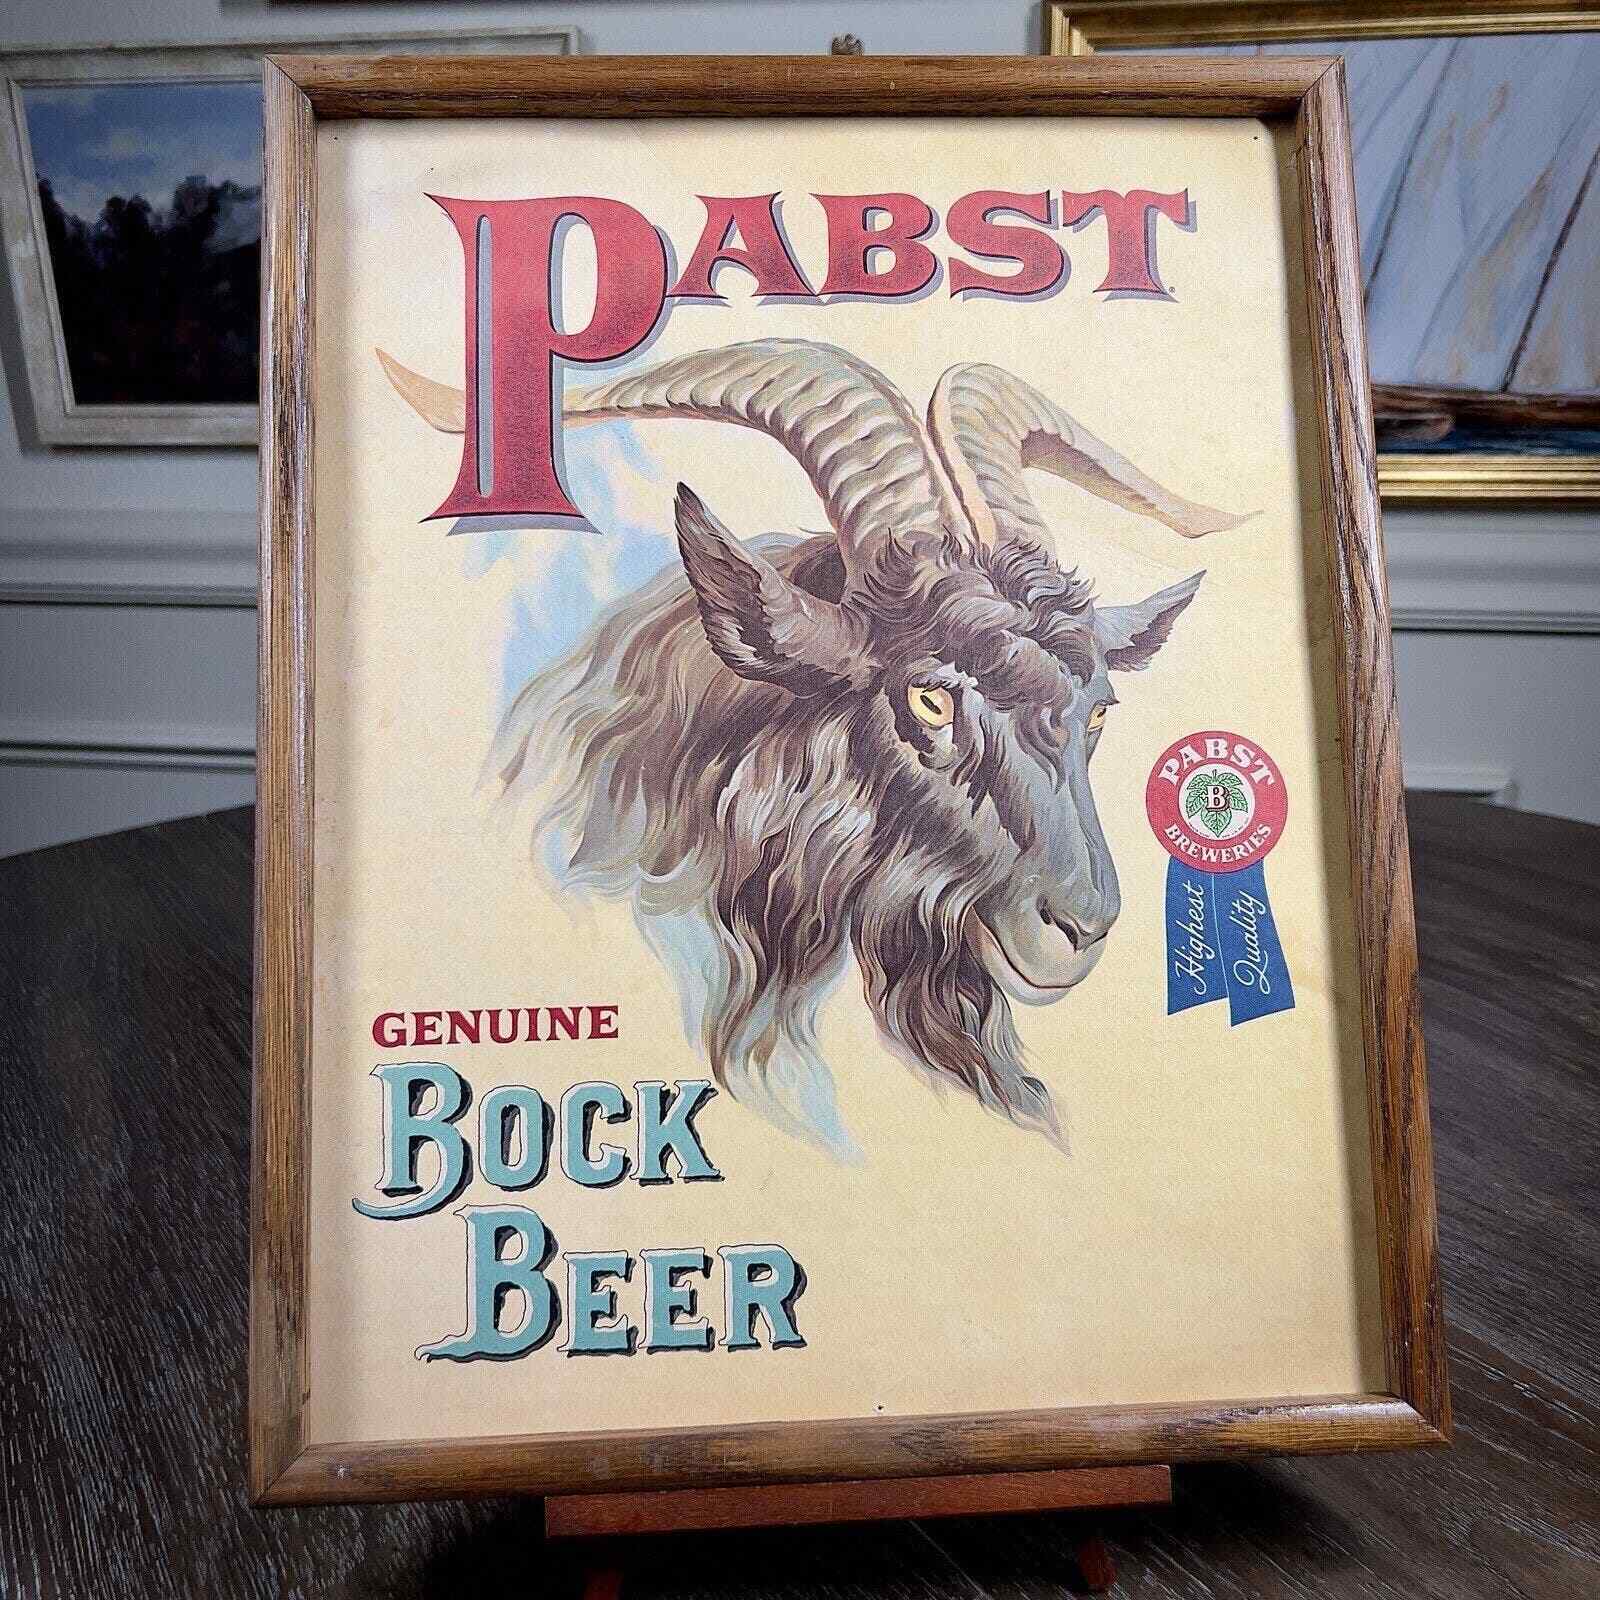 Original Vintage Pabst Bock Beer Advertisement Goat Head Framed